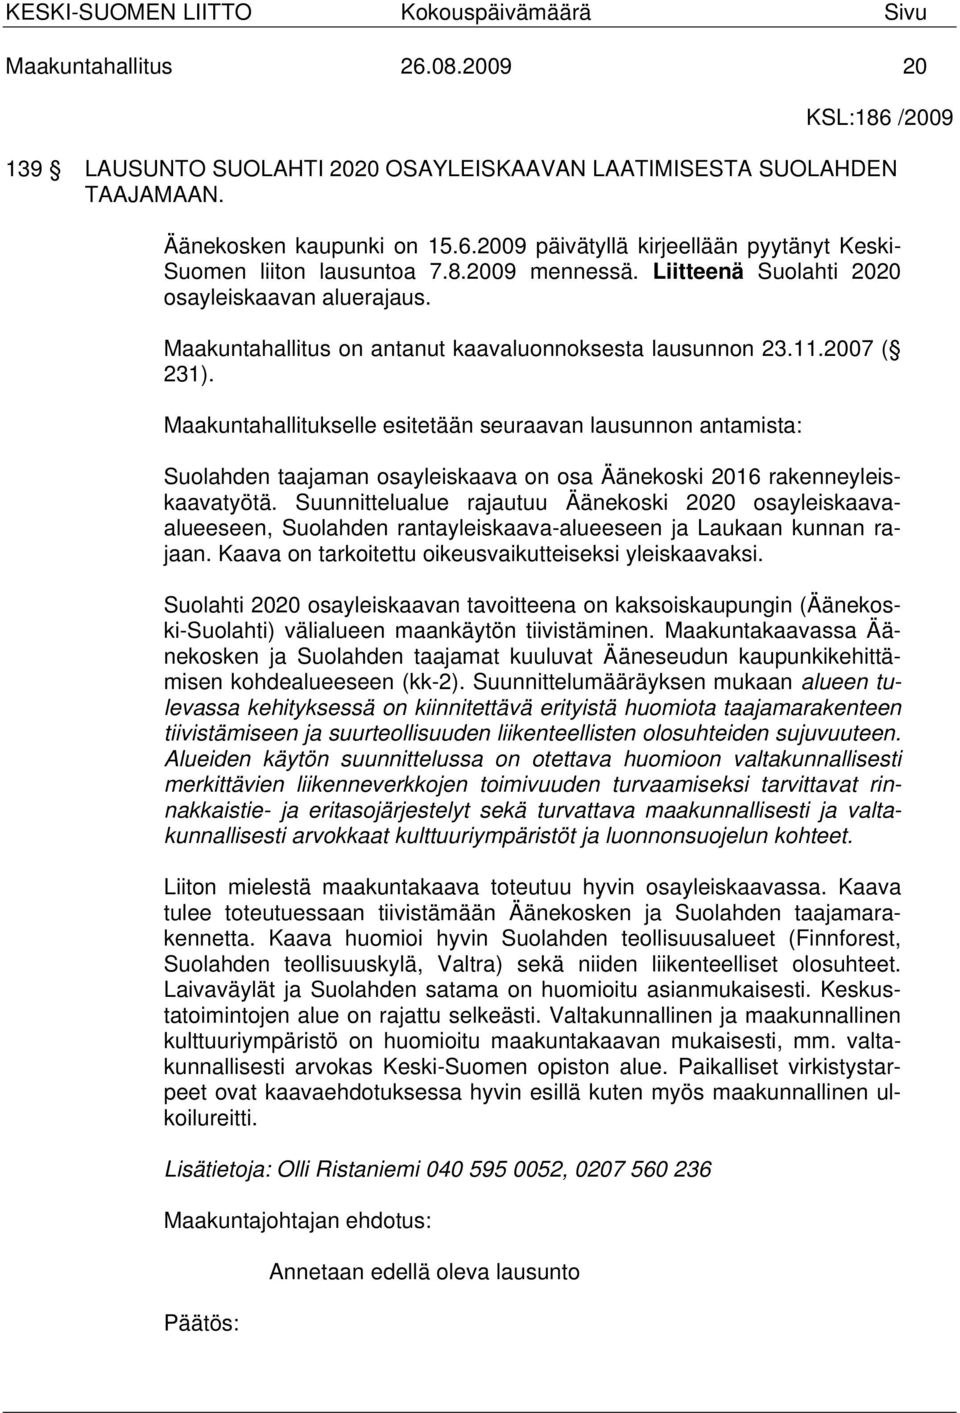 Maakuntahallitukselle esitetään seuraavan lausunnon antamista: Suolahden taajaman osayleiskaava on osa Äänekoski 2016 rakenneyleiskaavatyötä.